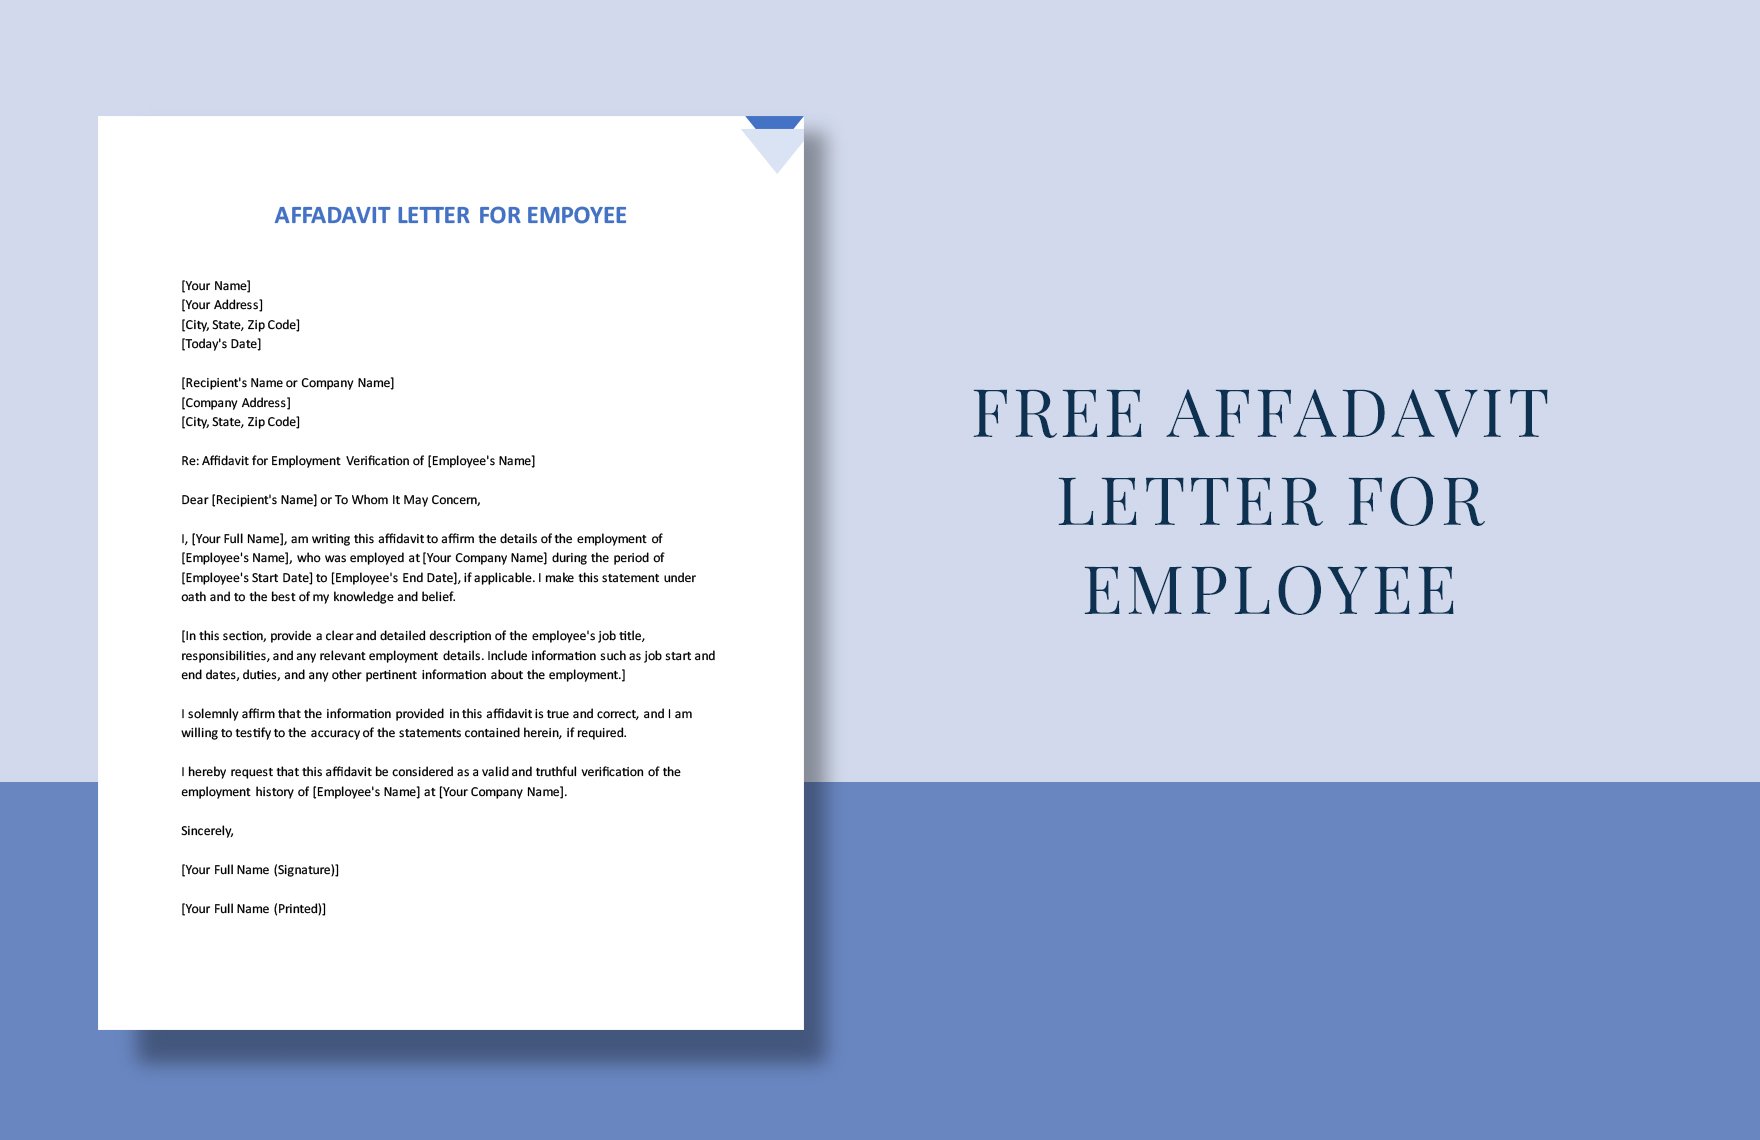 Affidavit Letter For Employee